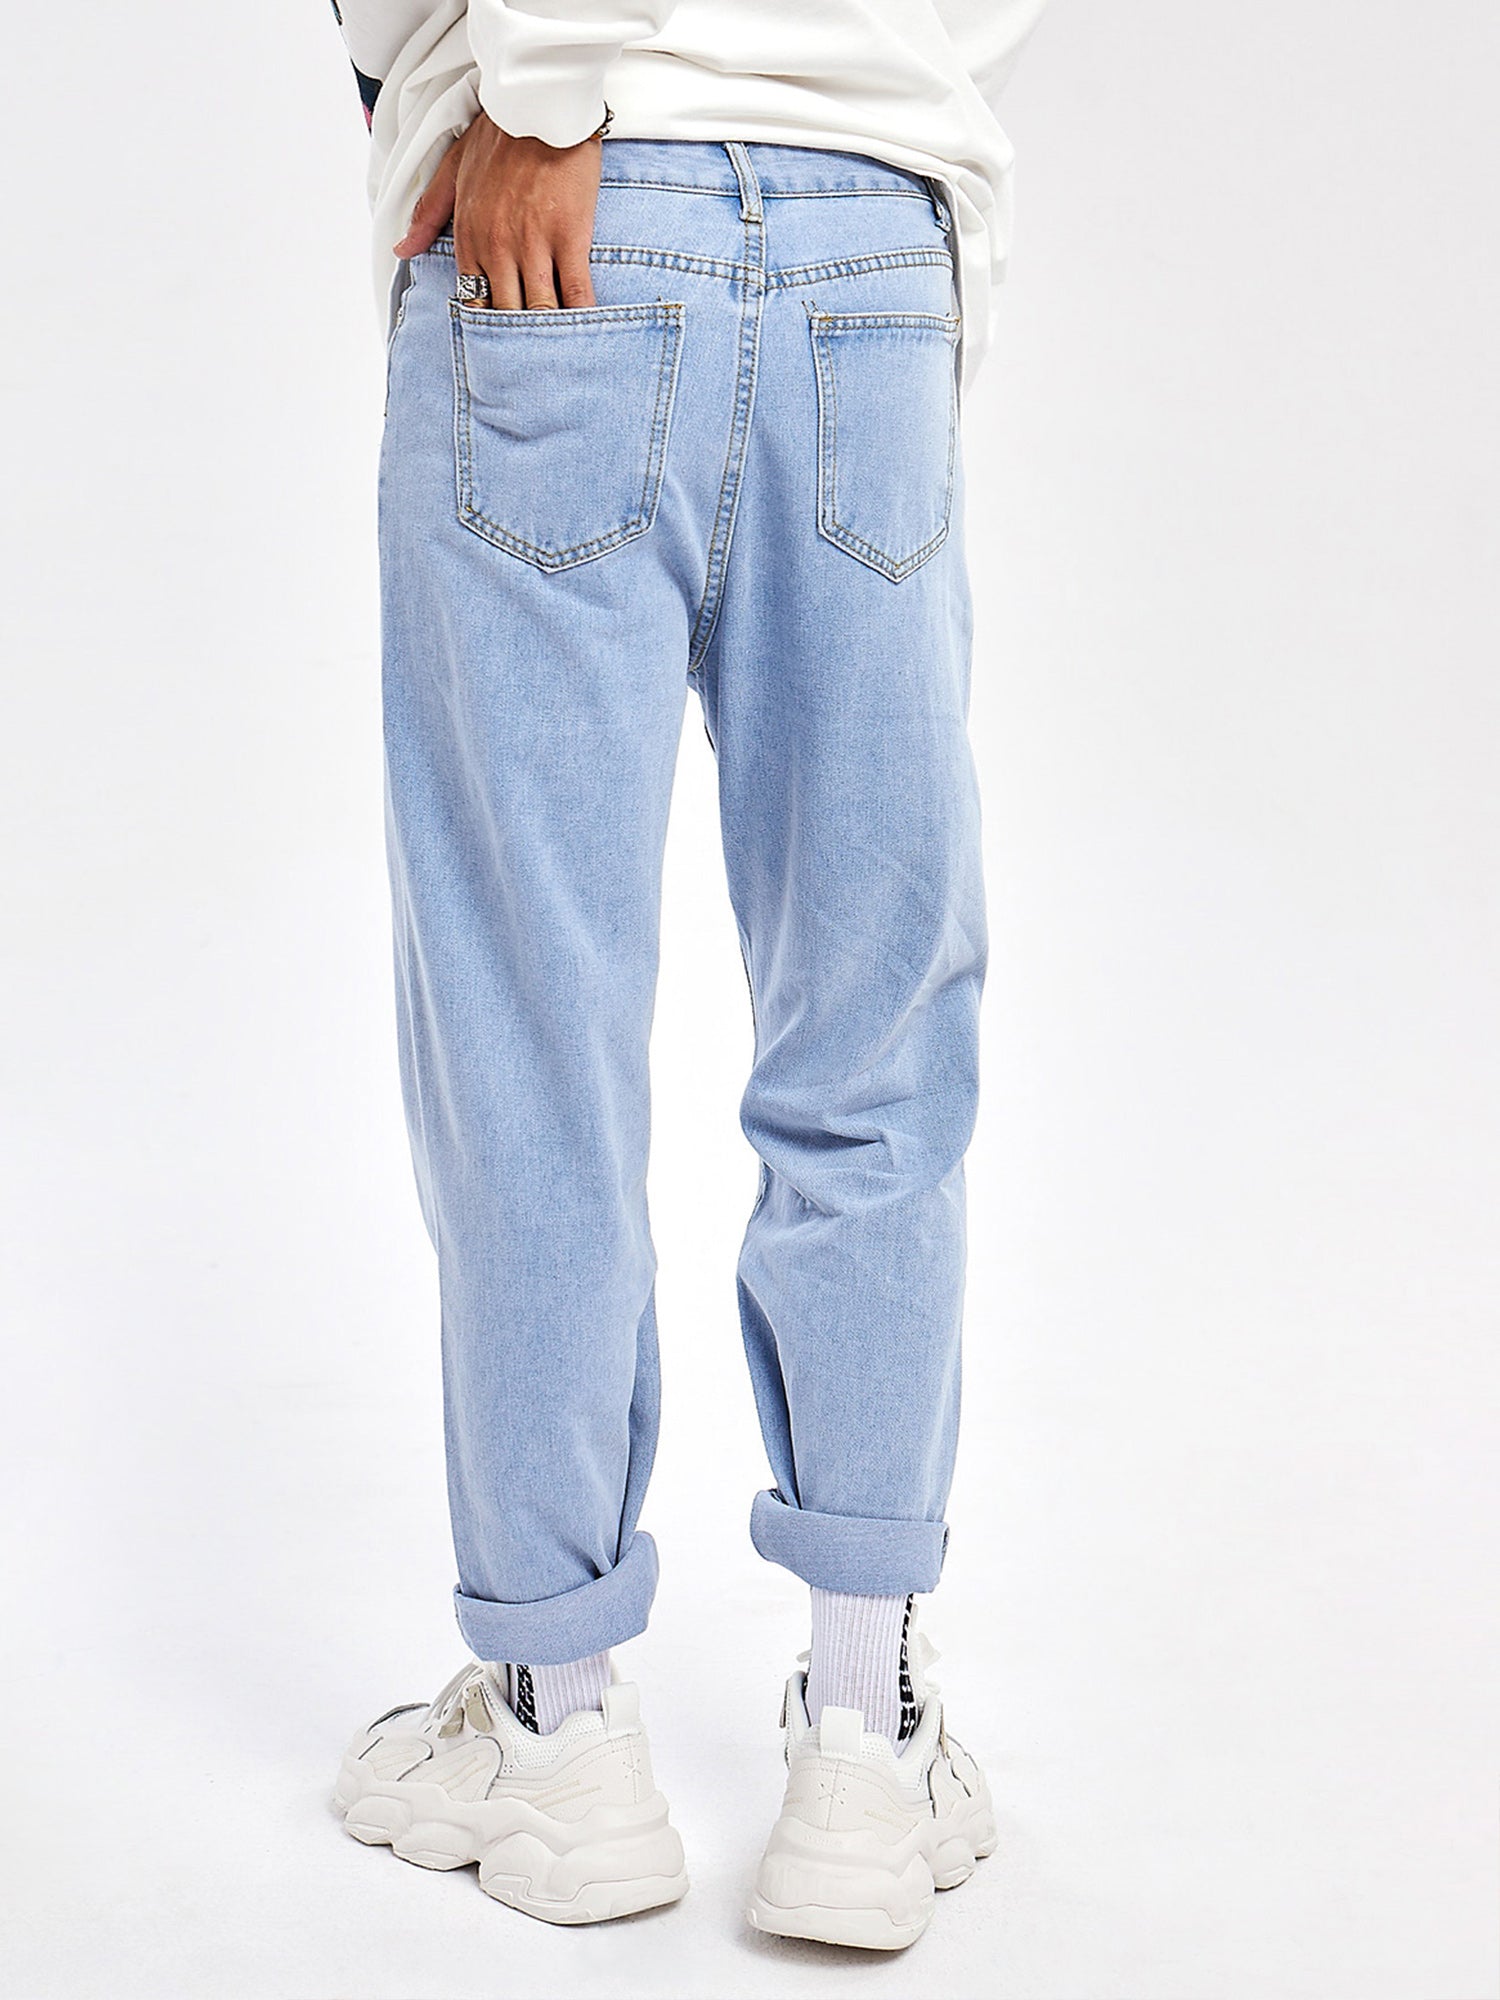 JUSTNOTAG Casual Street HipHop Print Hellblaue lange lockere Jeans